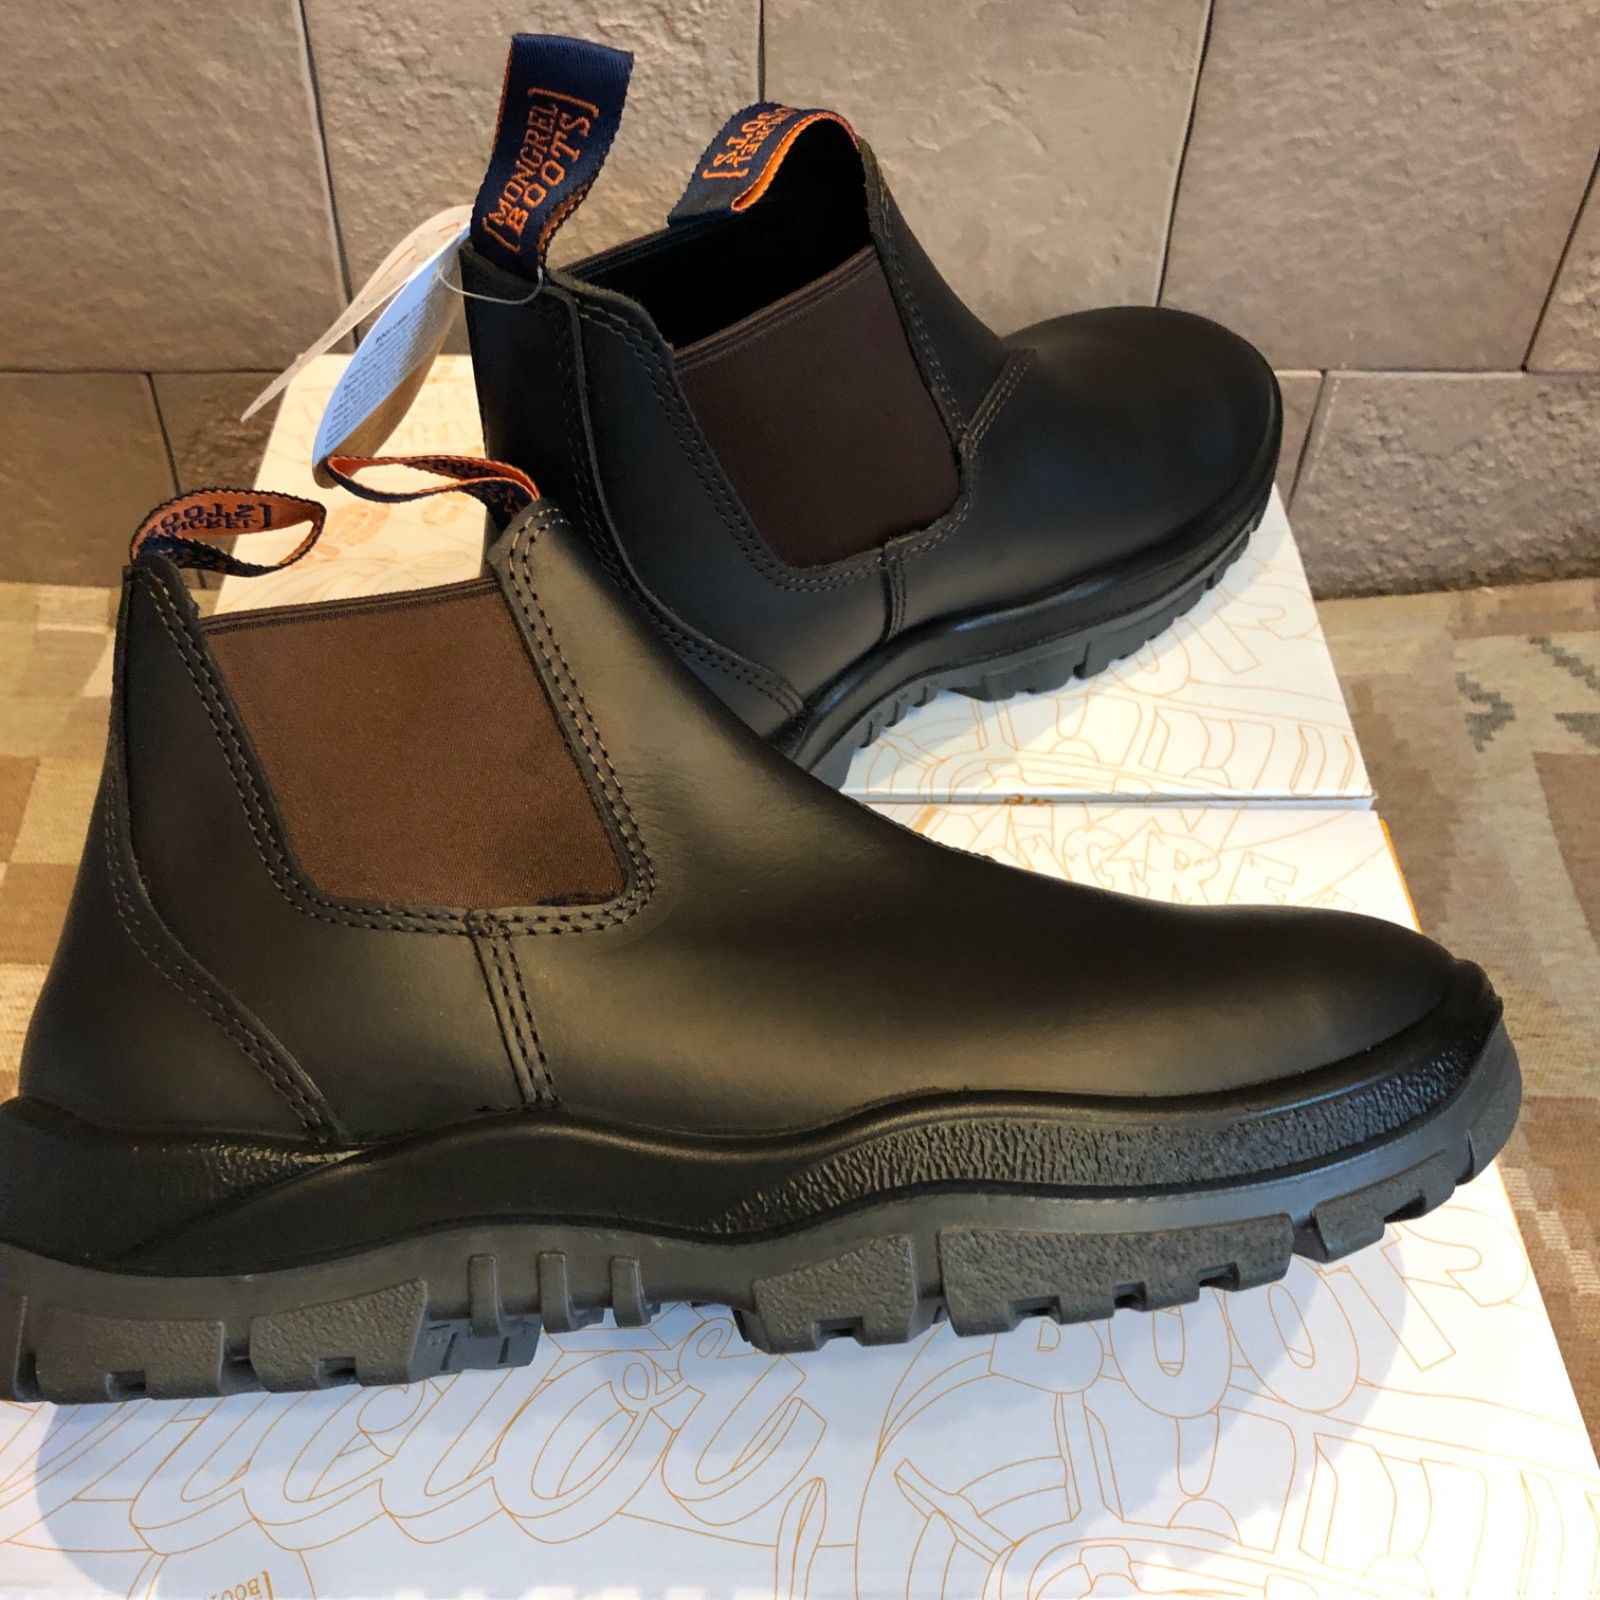 モングレルブーツ新品 オーストラリア発 MONGREL BOOTS 安全靴 サイドゴアブーツ